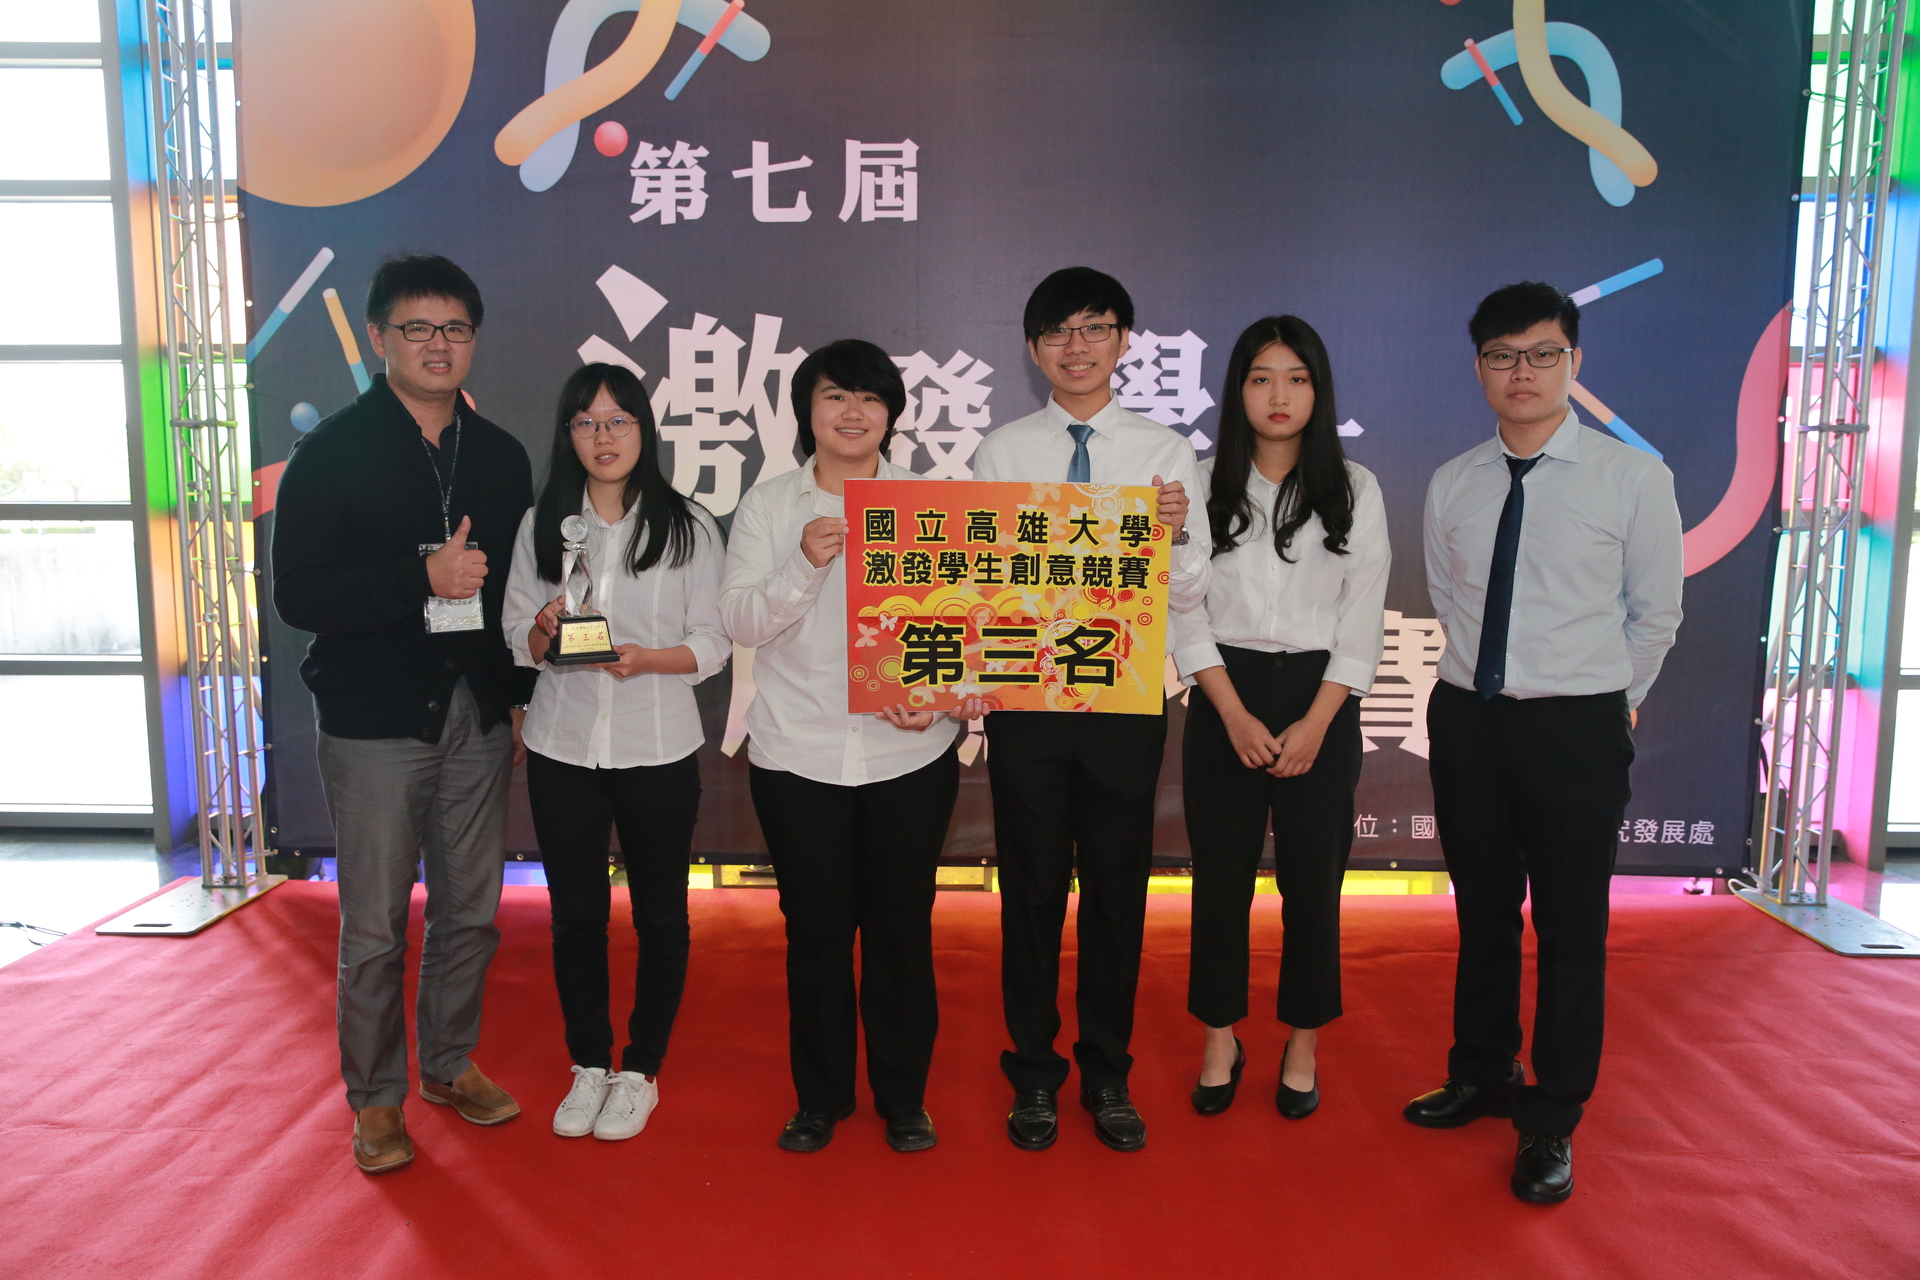 資管系學生宋芝瑩、許景晰、盧耕安、許鈞凱、邱鈺淩以作品「SeeFood」獲得第3名。